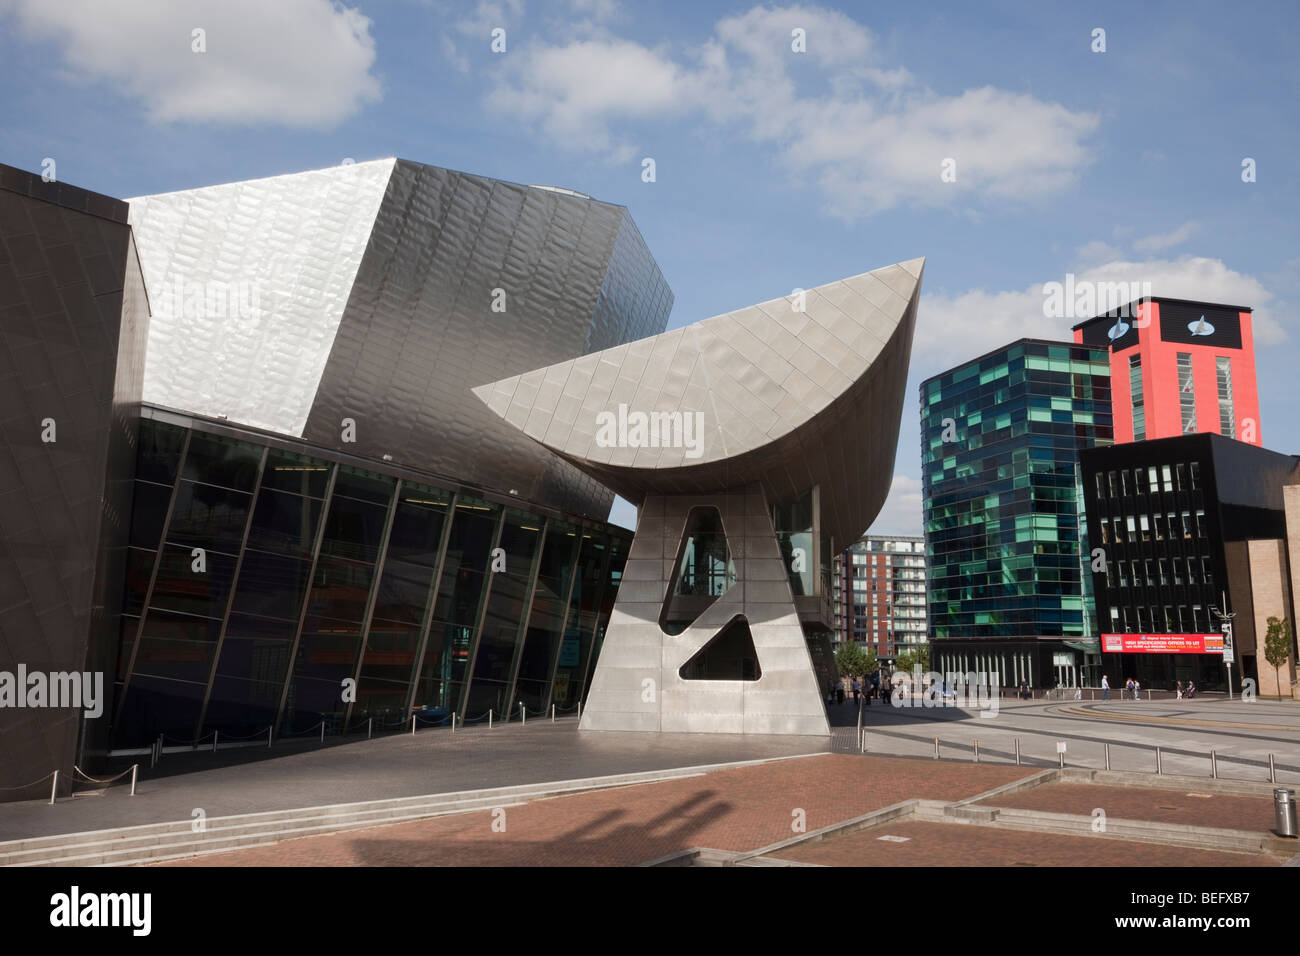 Le Lowry Centre complexe artistique dans un immeuble moderne sur les Quais de Salford, Greater Manchester, Angleterre, Royaume-Uni, Angleterre Banque D'Images